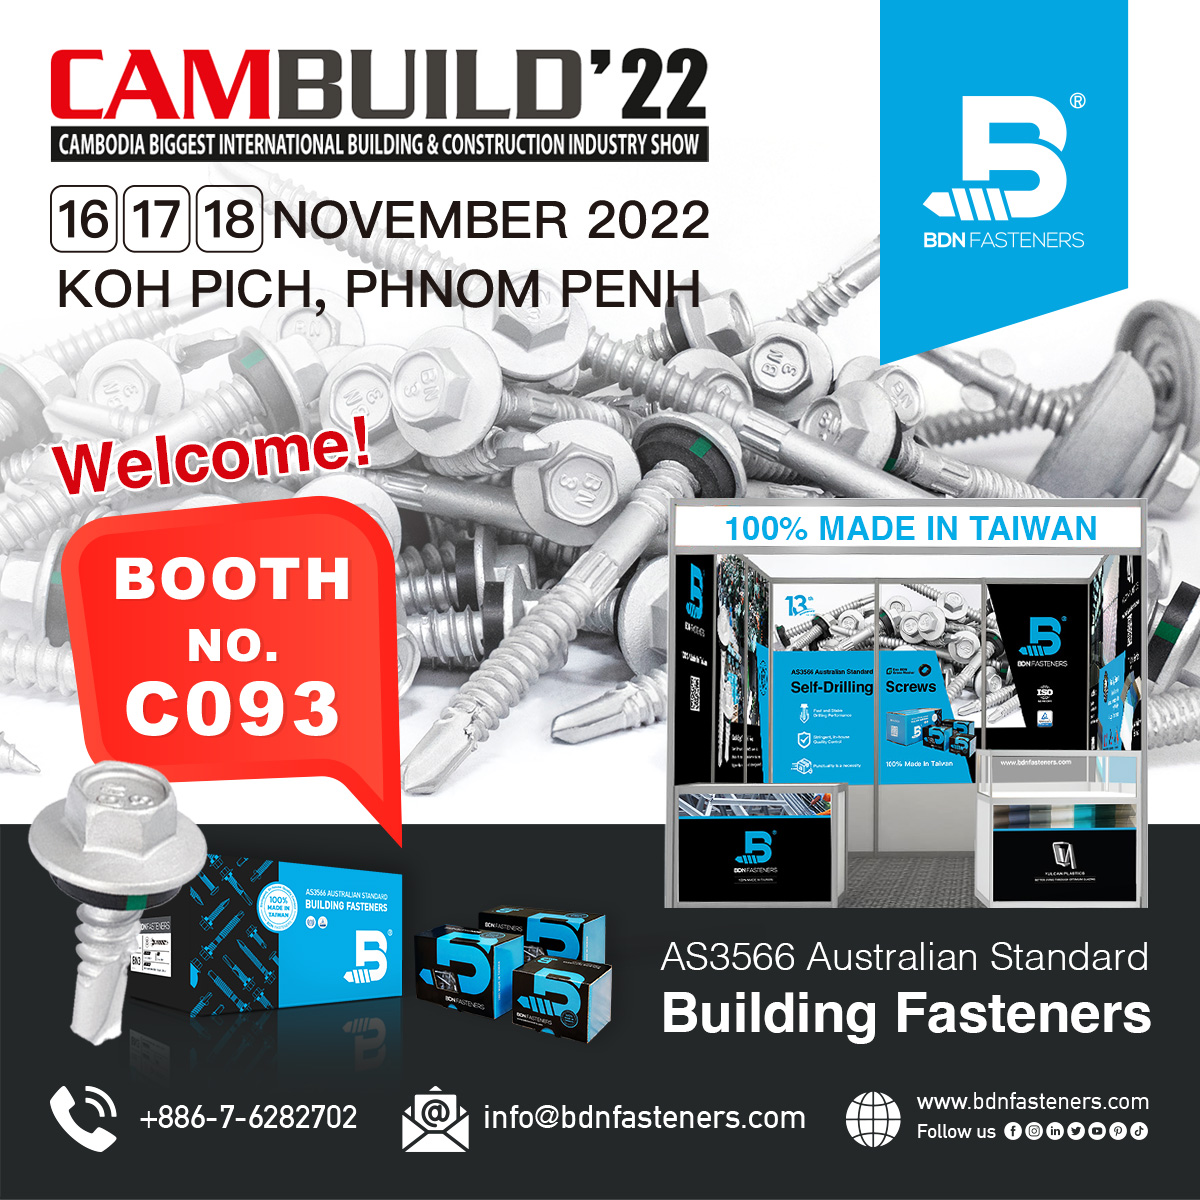 Cambuild 2022 Exhibition - BDN Fasteners Booth No C093